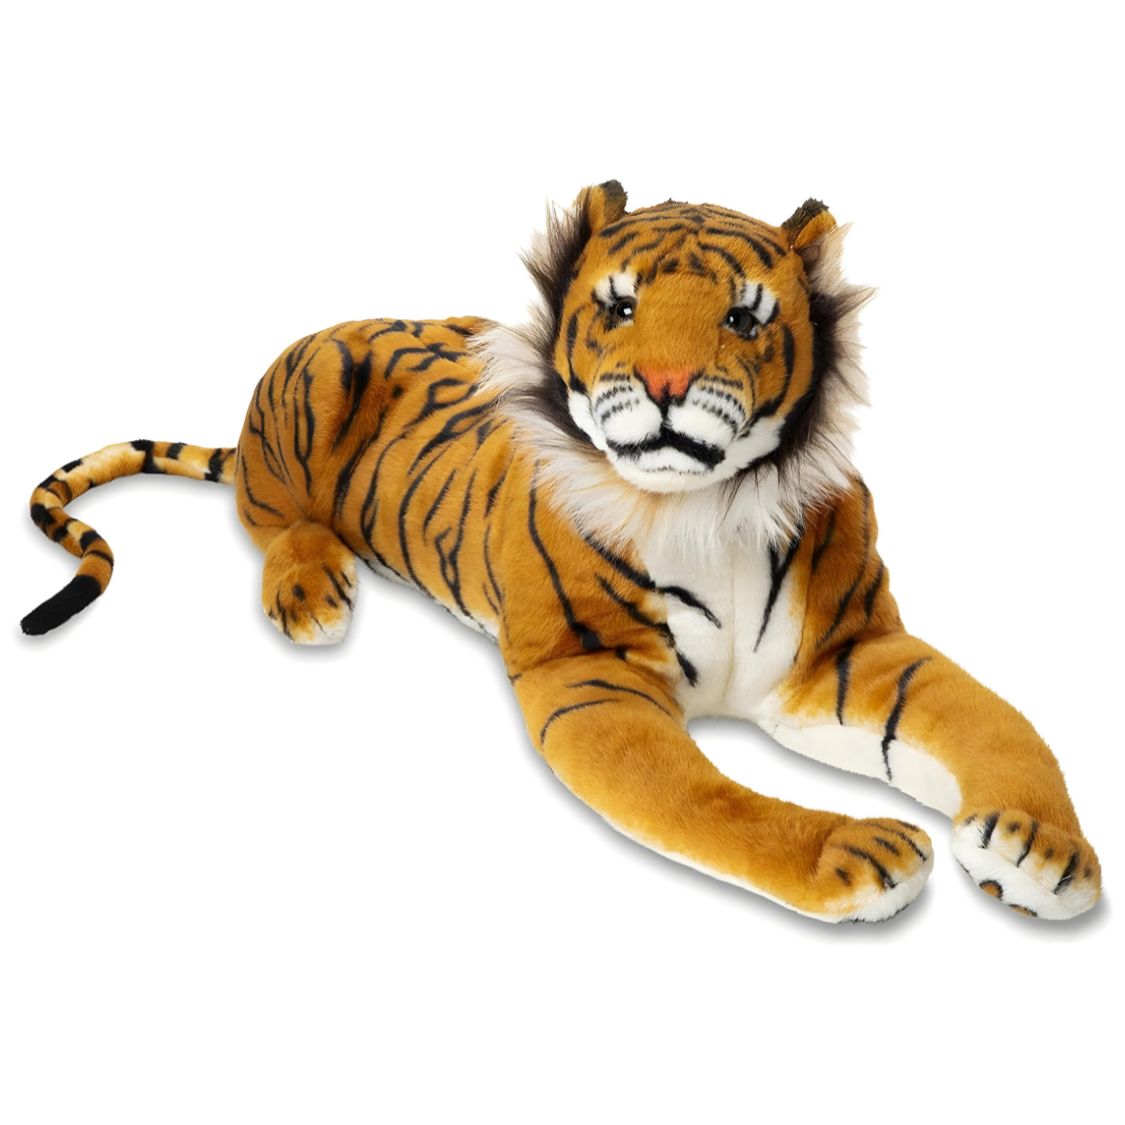 Large Tiger Plush Stuffed Animal